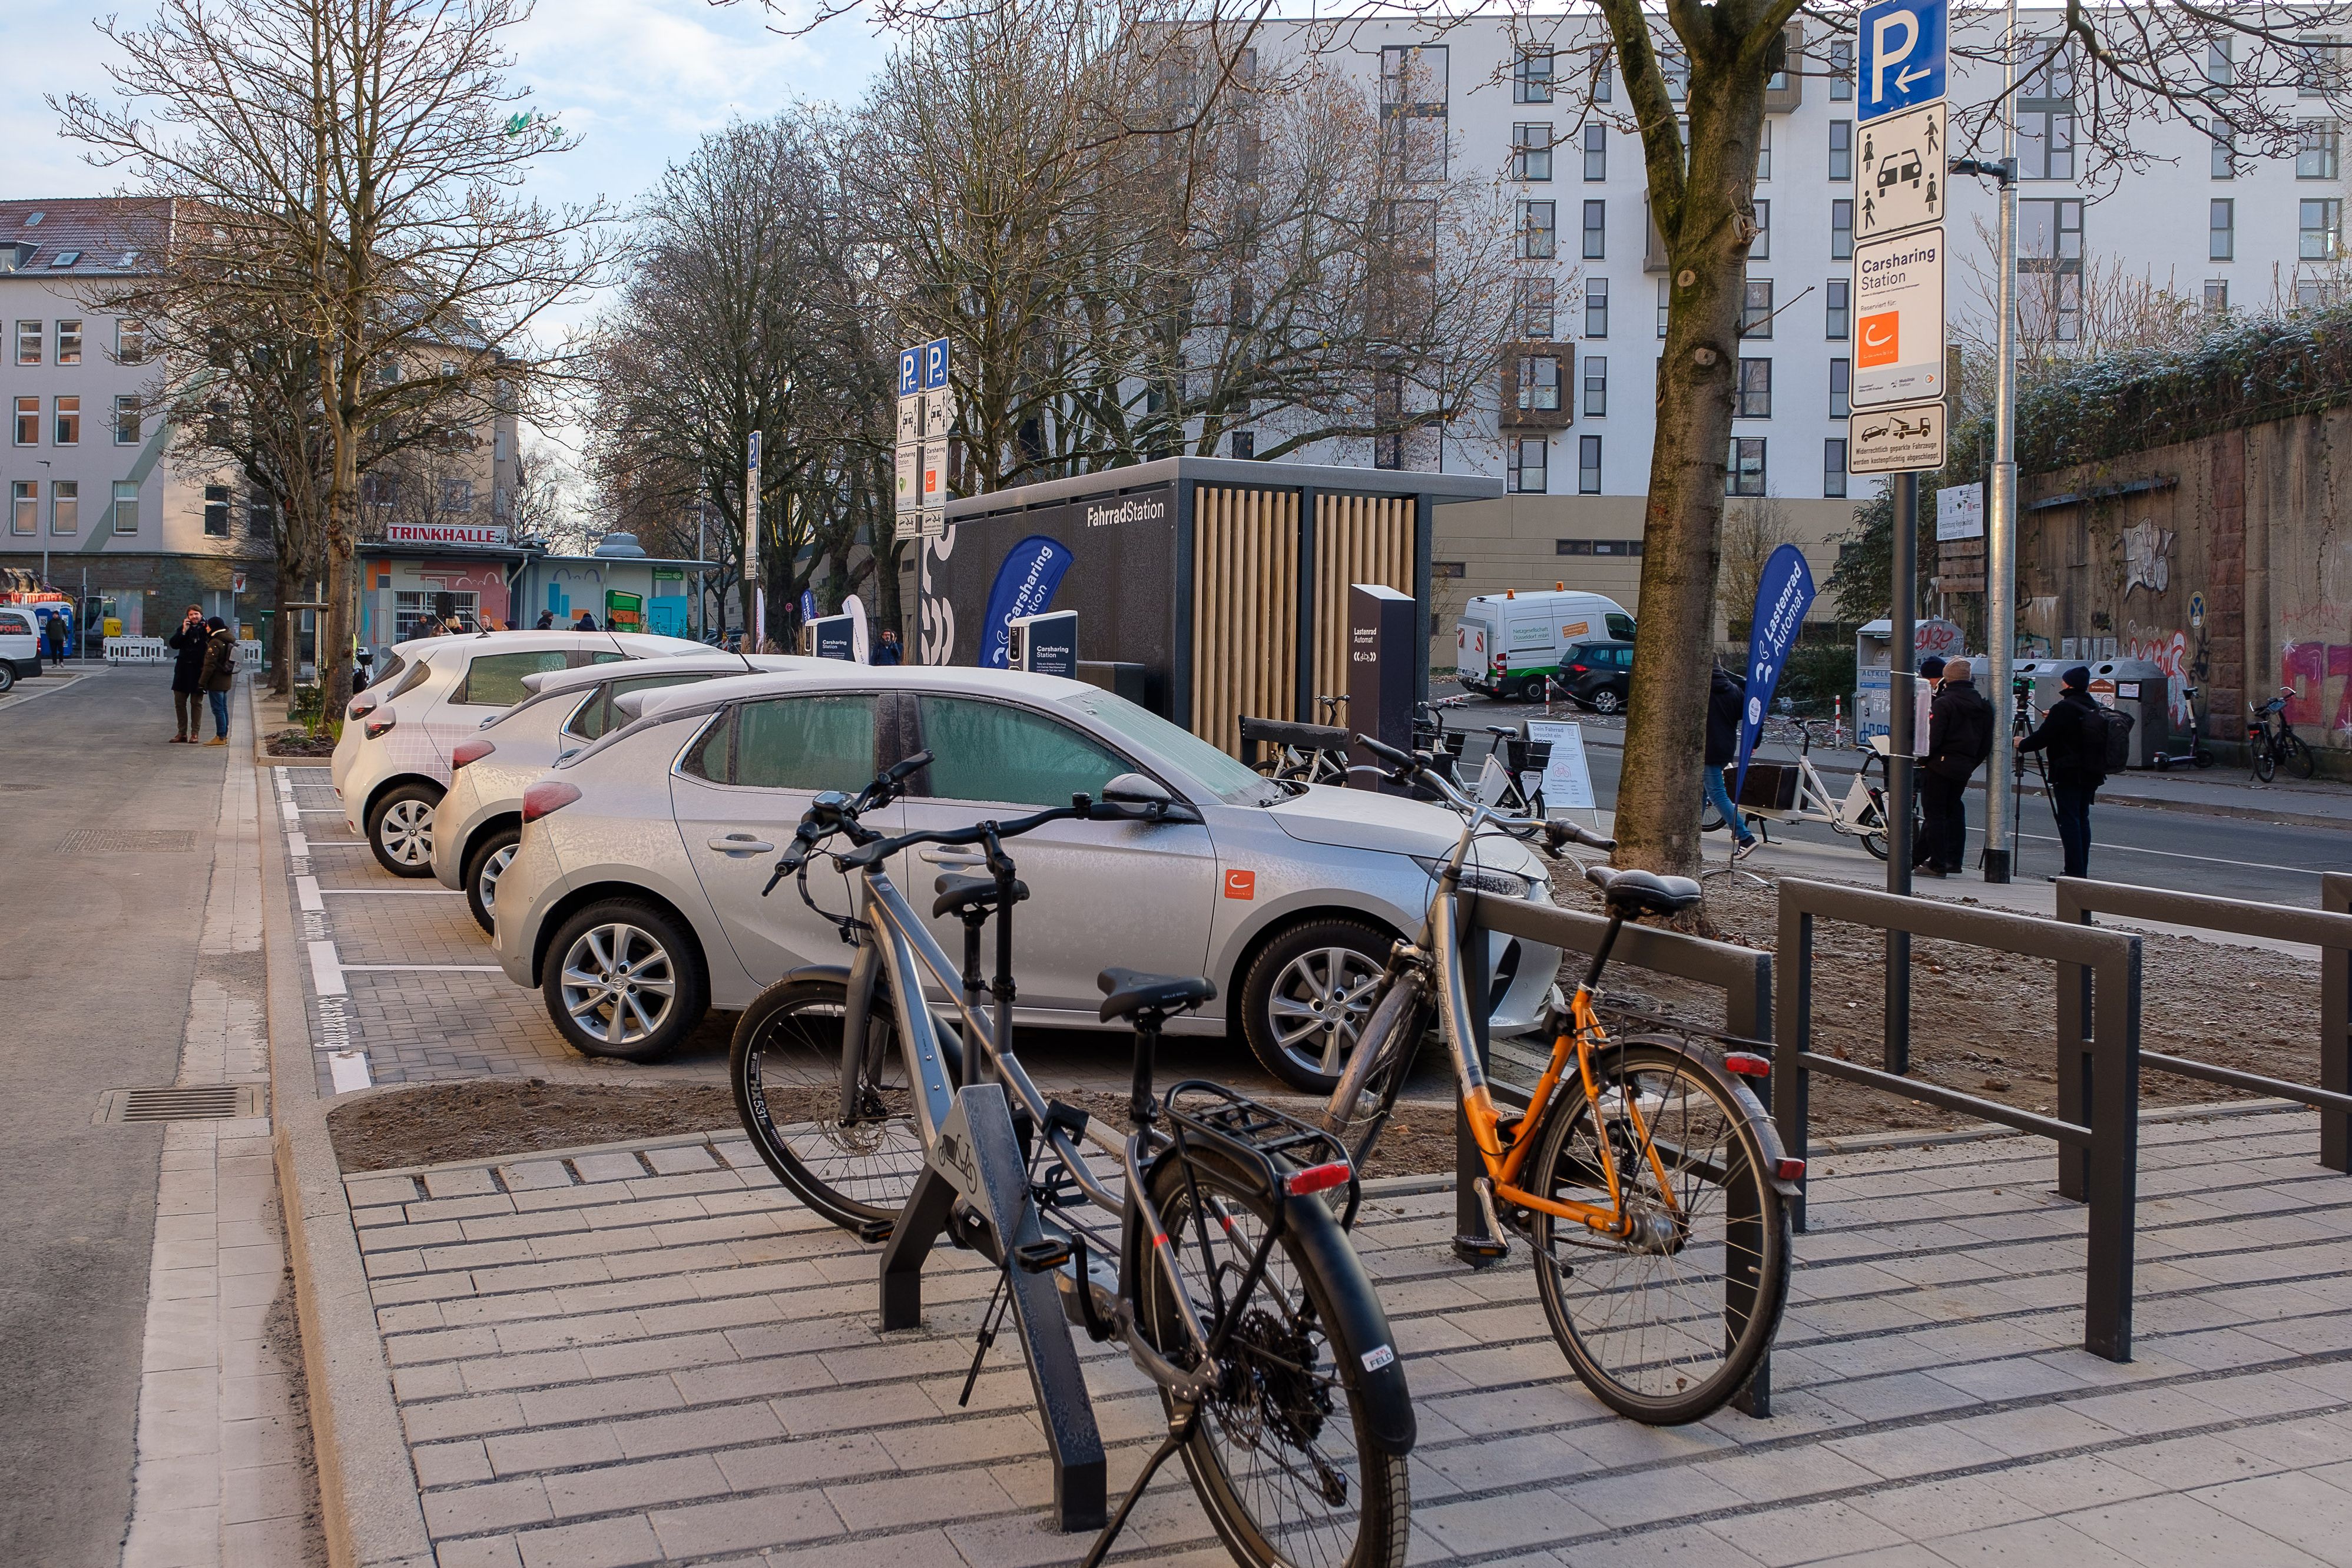 Fahrräder abstellen oder Carsharing - dank der neuen Mobilitätsstation am Bachplätzchen jetzt unkompliziert möglich © Landeshauptstadt Düsseldorf, Uwe Schaffmeister 